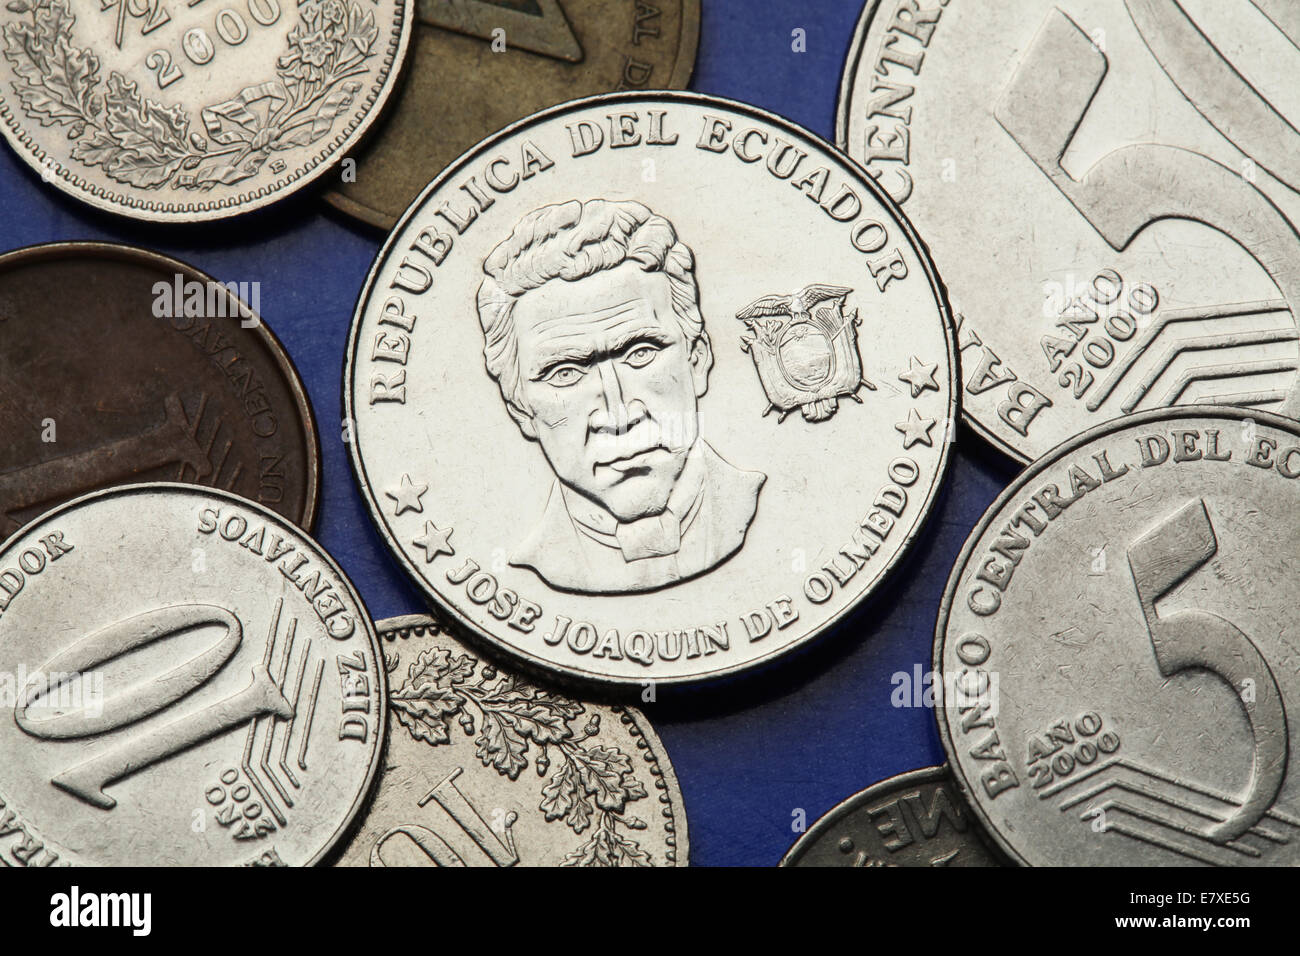 Coins of Ecuador. Ecuadorian national hero and poet Jose Joaquin de Olmedo depicted in the Ecuadorian centavo coins. Stock Photo